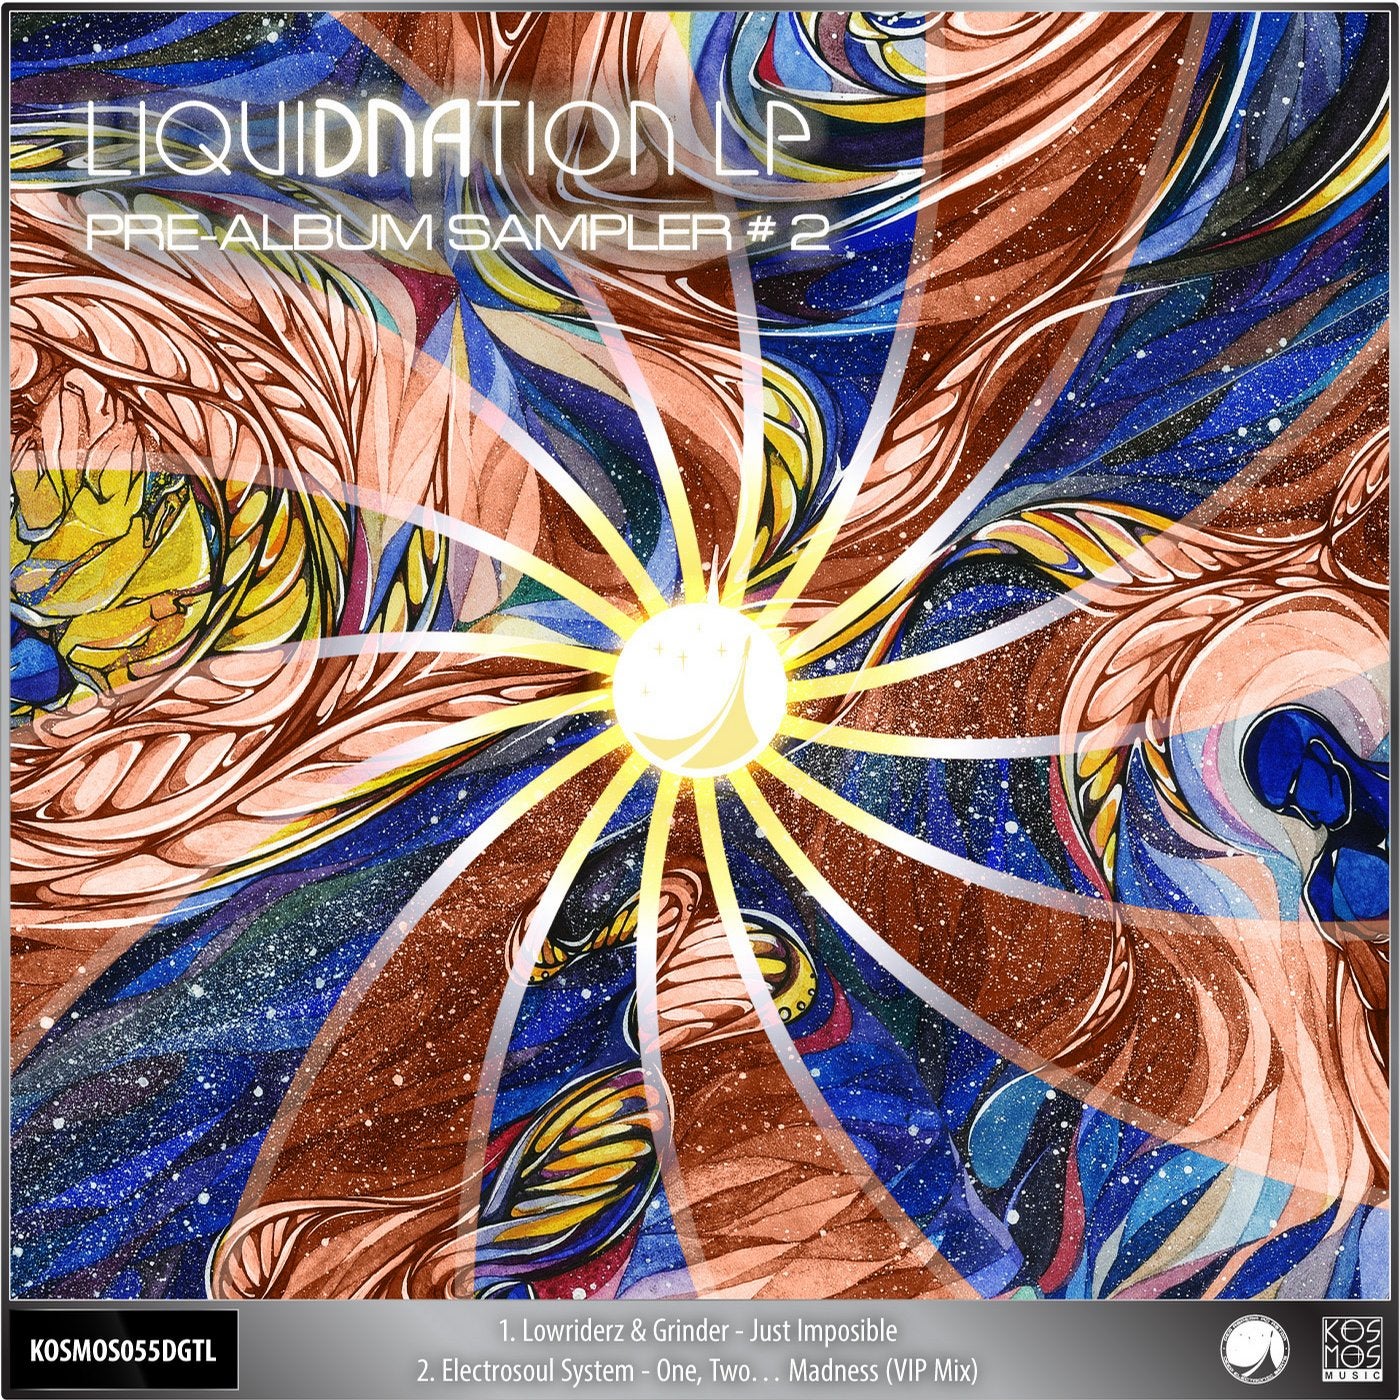 V/A LiquiDNAtion LP - Pre-Album Sampler #2